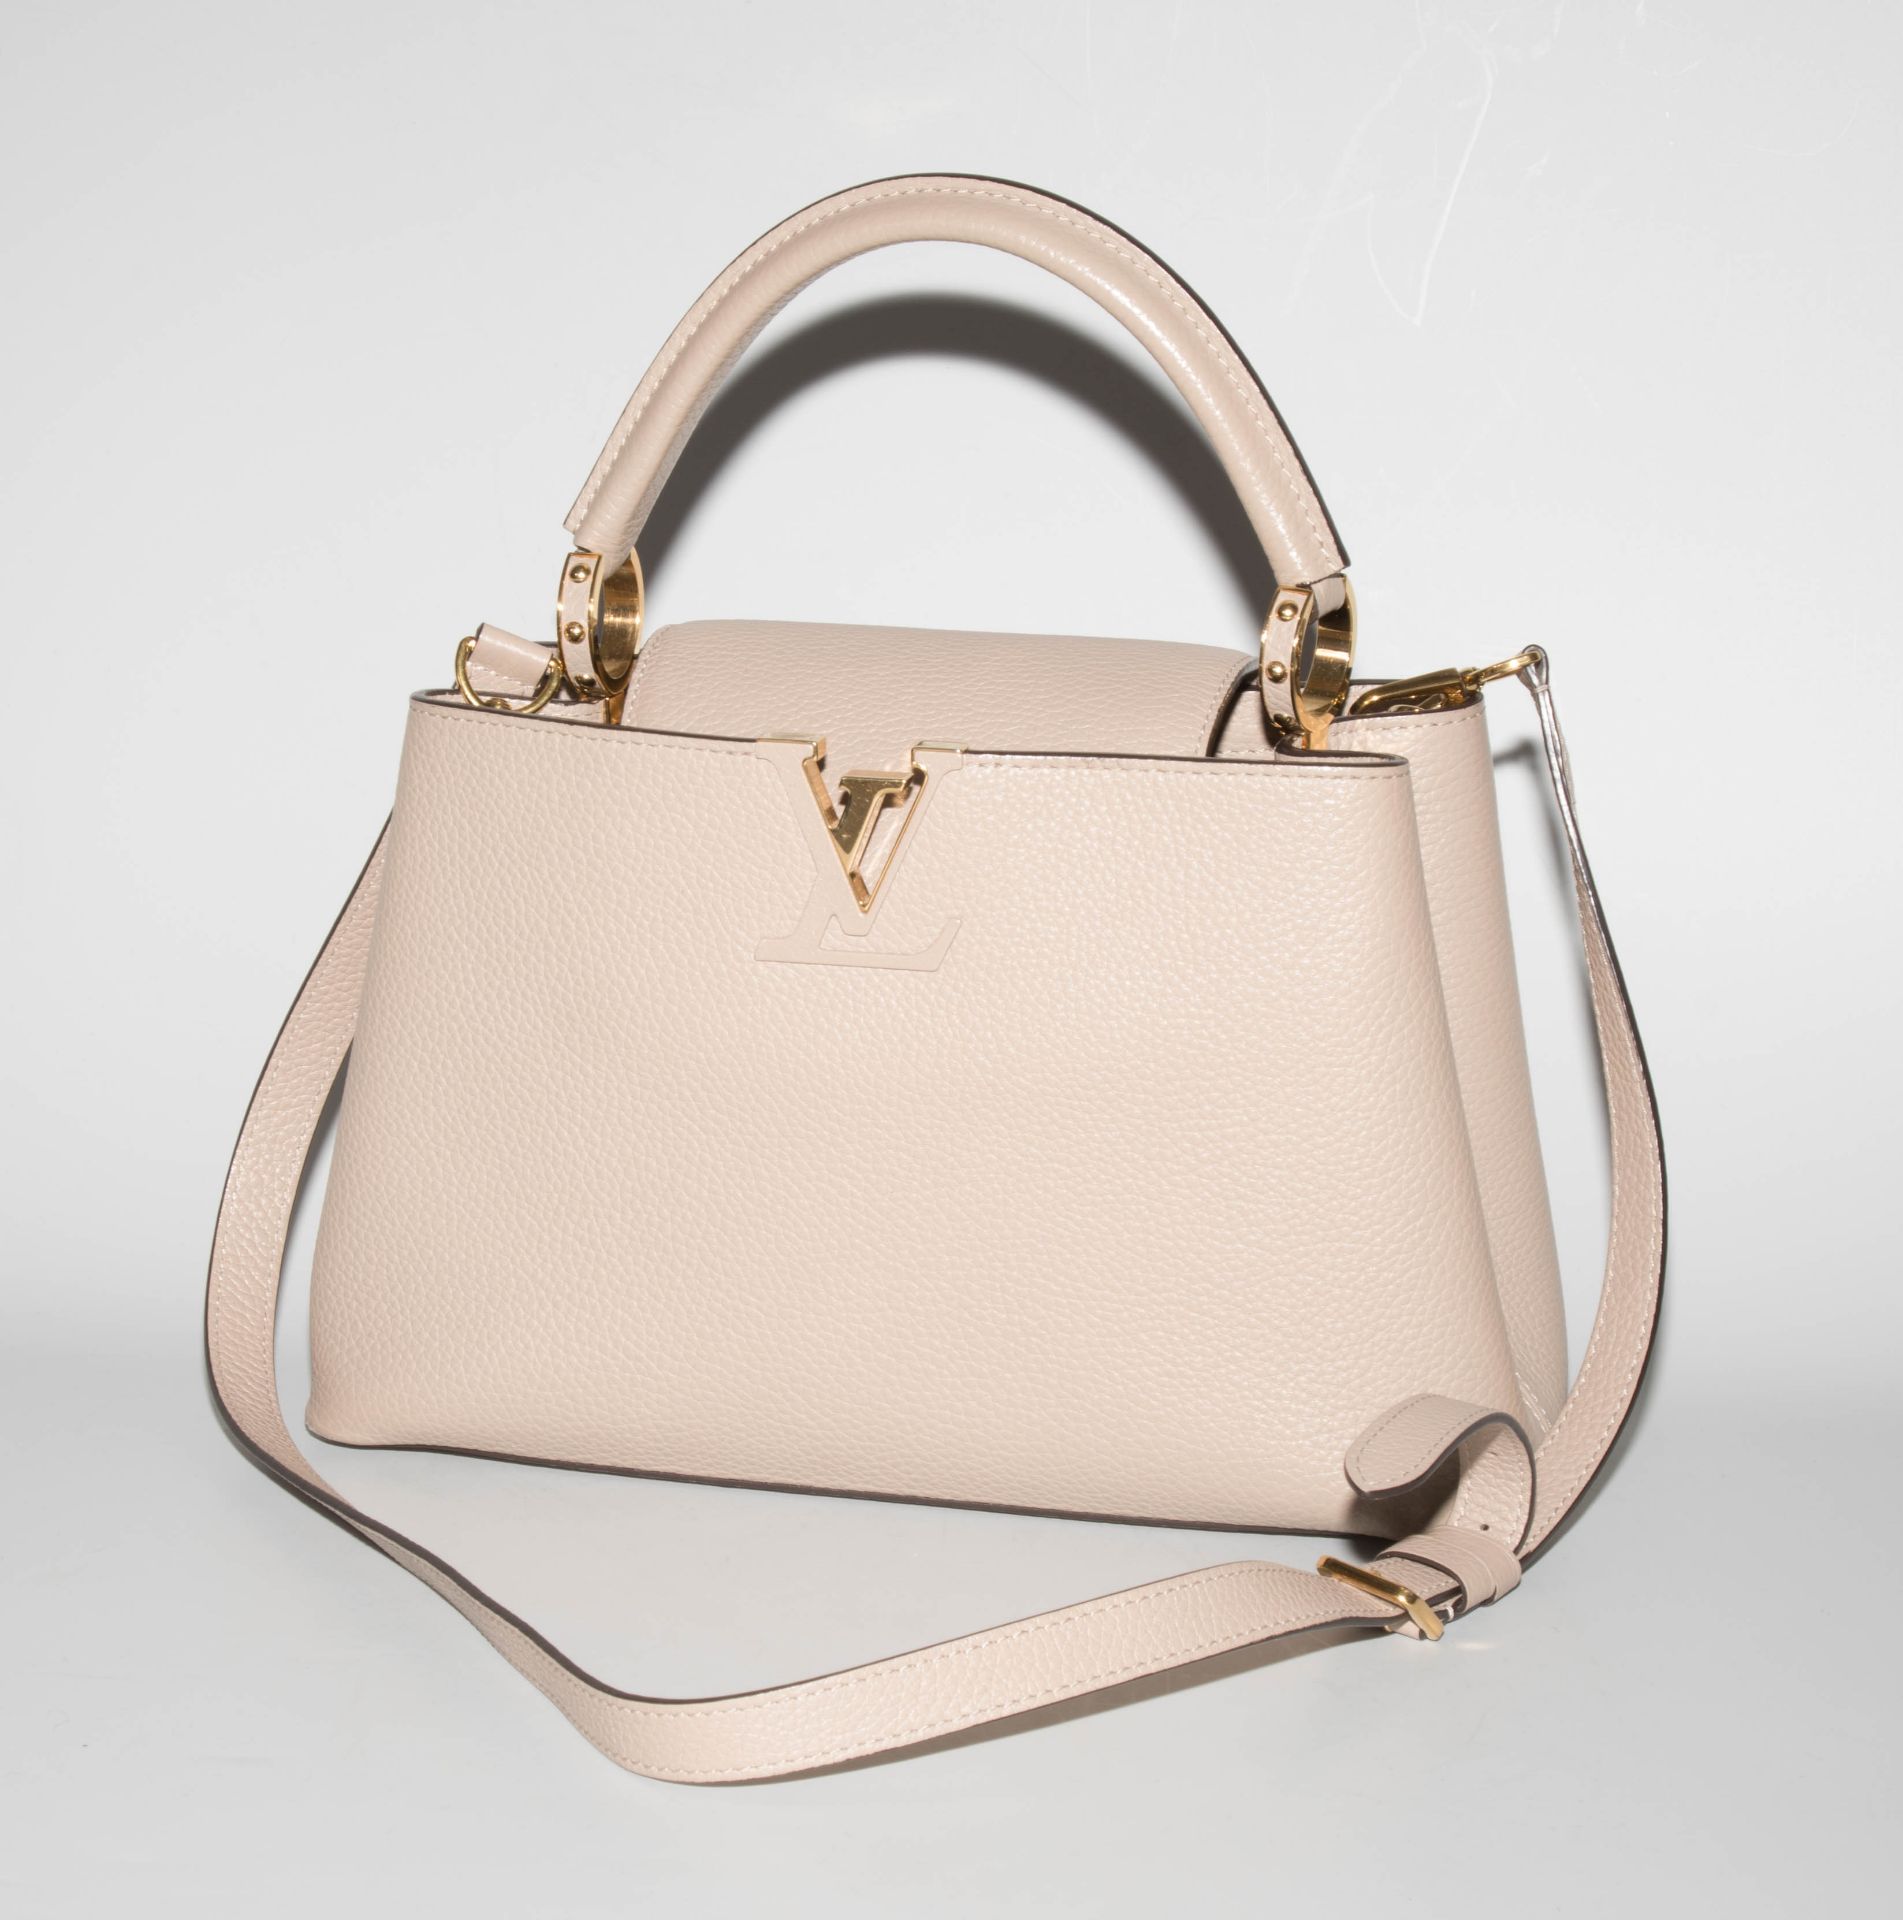 Louis Vuitton, Handtasche "Capucines" - Image 2 of 17